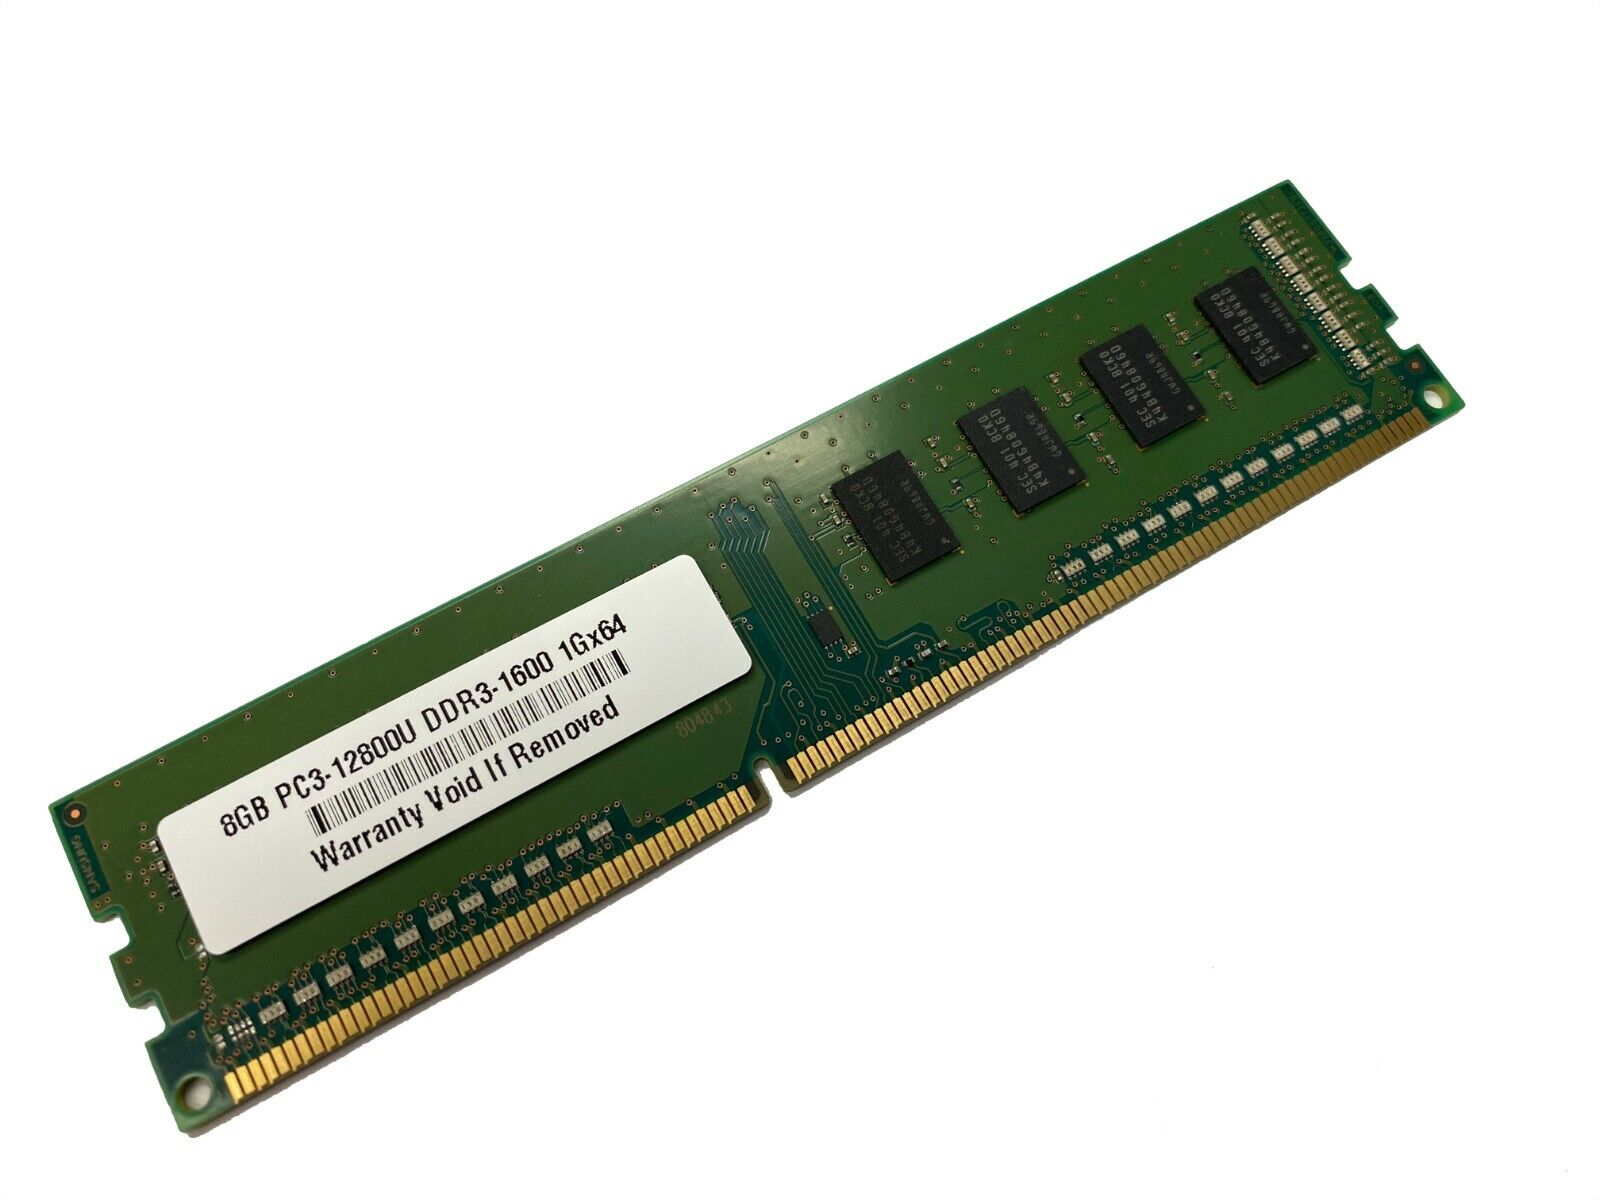 8GB Memory for ASUS Z97-WS, Z97-A/USB 3.1, Z97-AR DDR3 PC3-12800U RAM